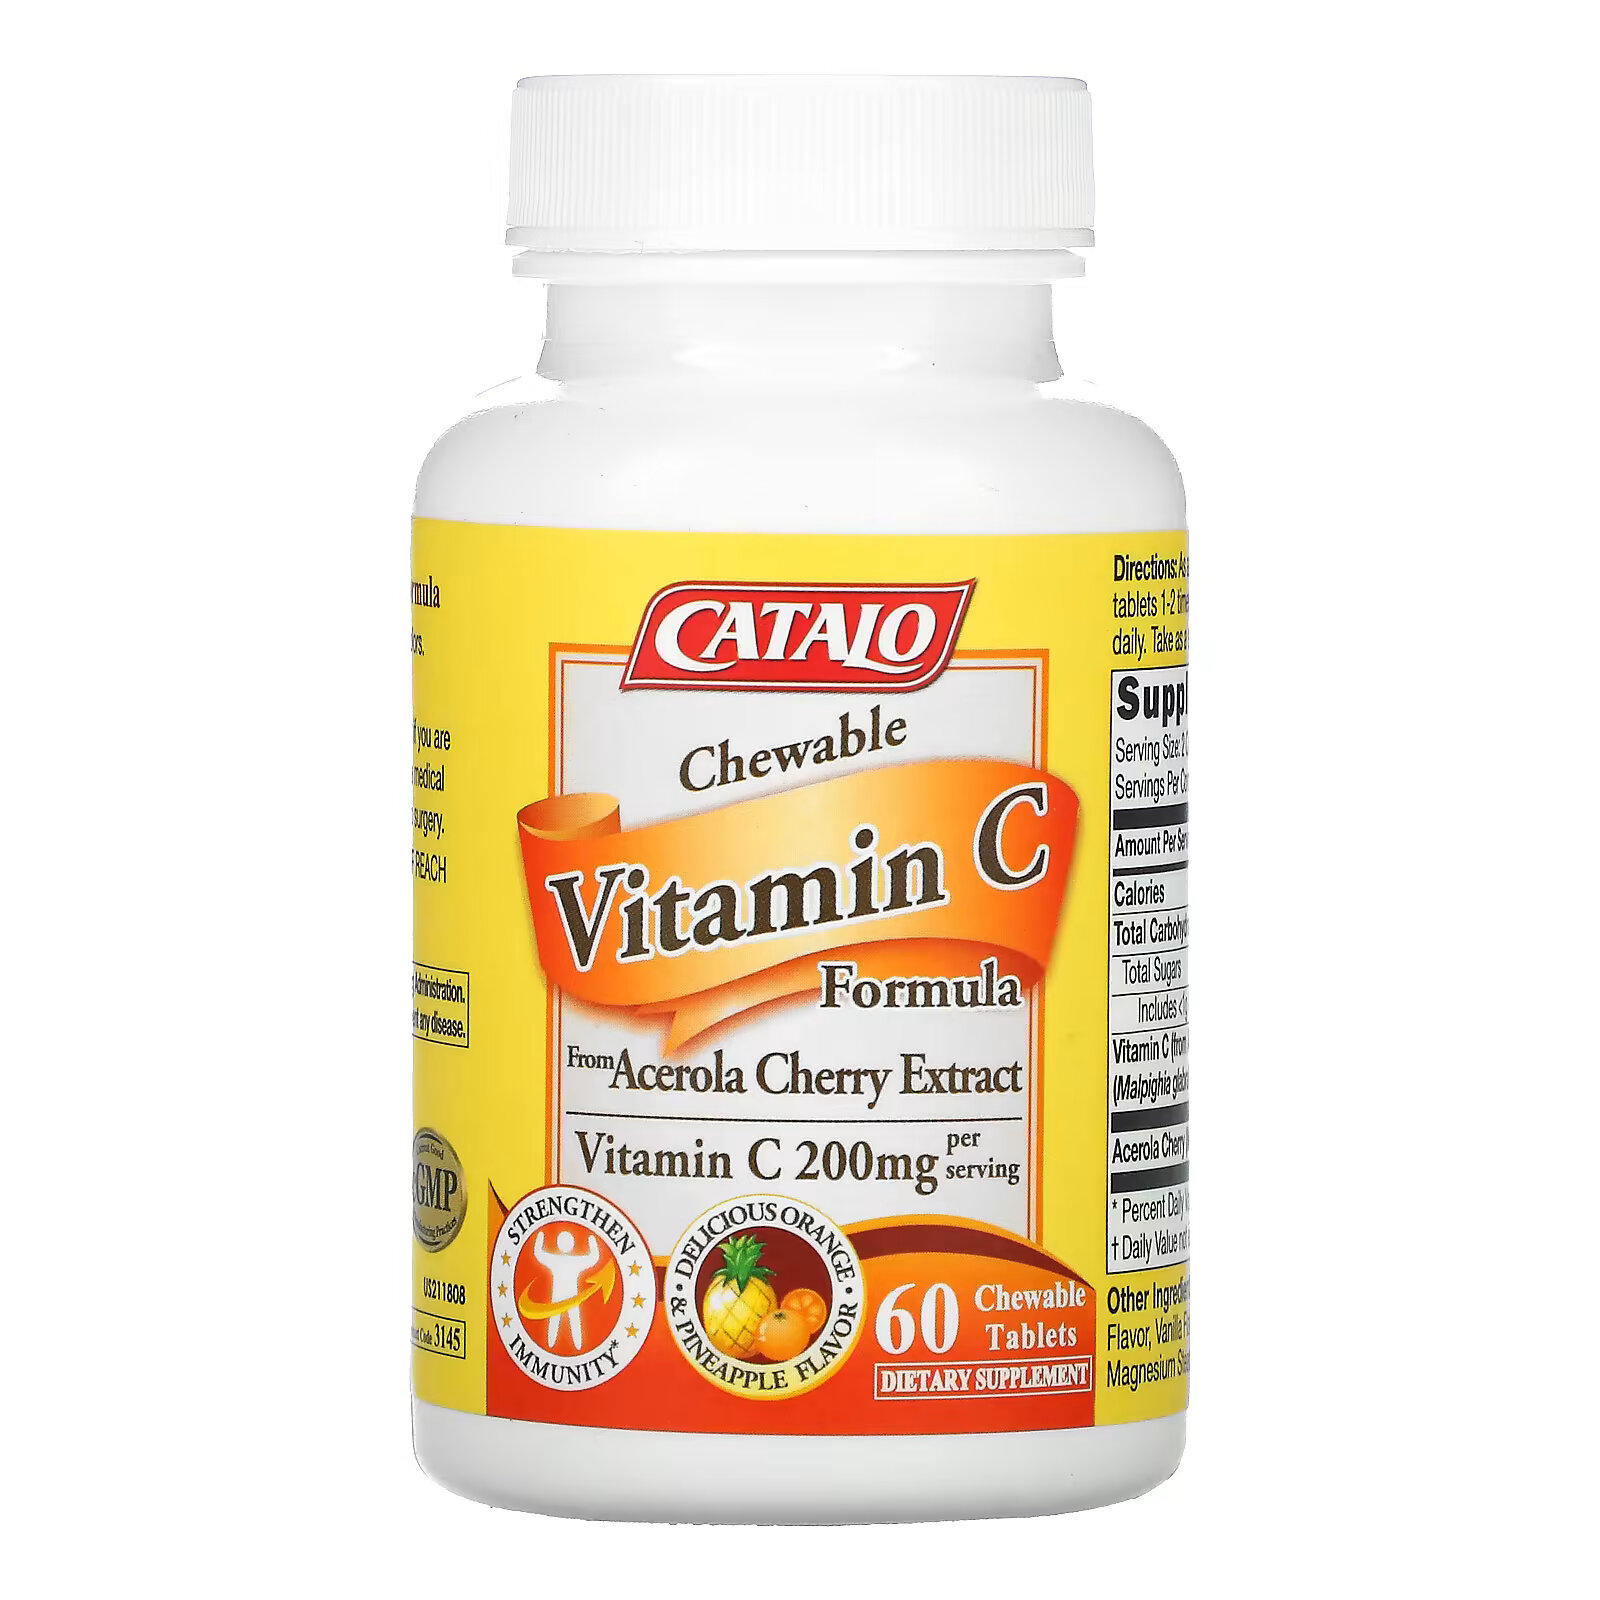 Витамин C со вкусом апельсина и ананаса Catalo Naturals 100 мг, 60 жевательных таблеток catalo naturals детские пробиотики формула для улучшения пищеварения и иммунитета от 1 месяца 3 миллиарда кое 60 вегетарианских капсул